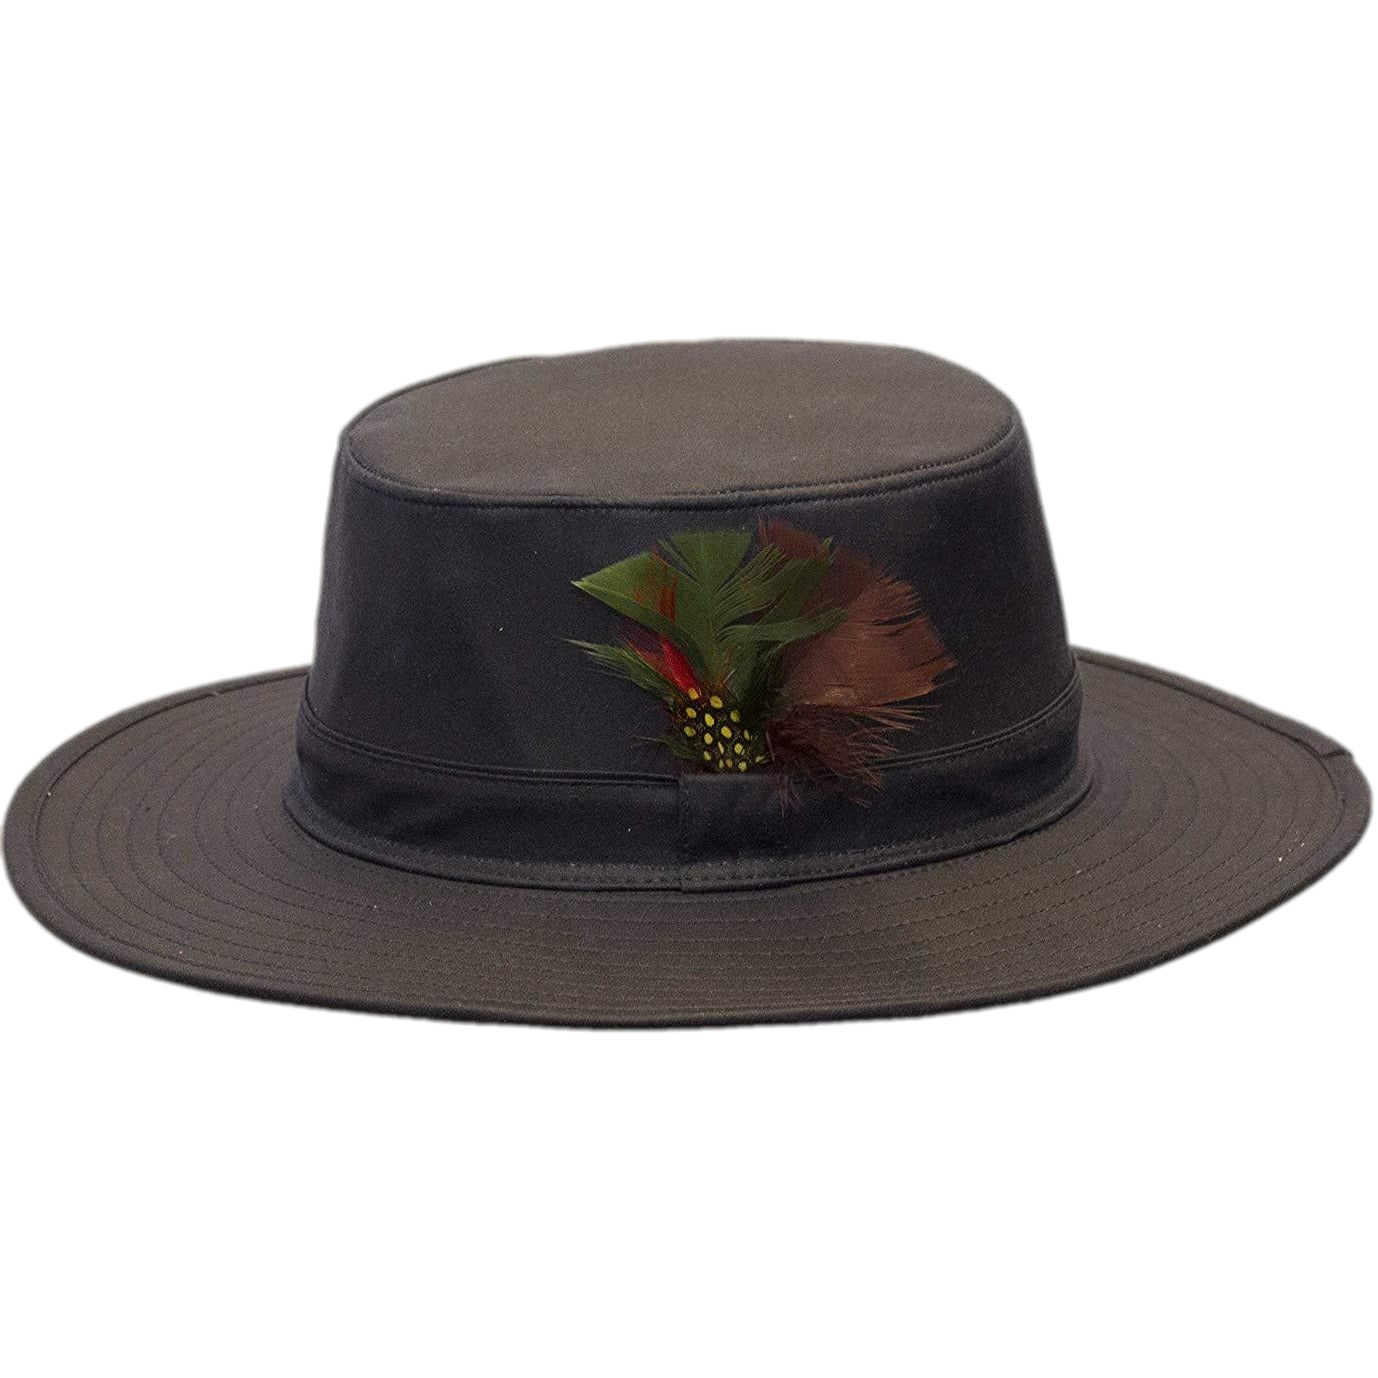 Wax Belmont Aussie Outback Hat